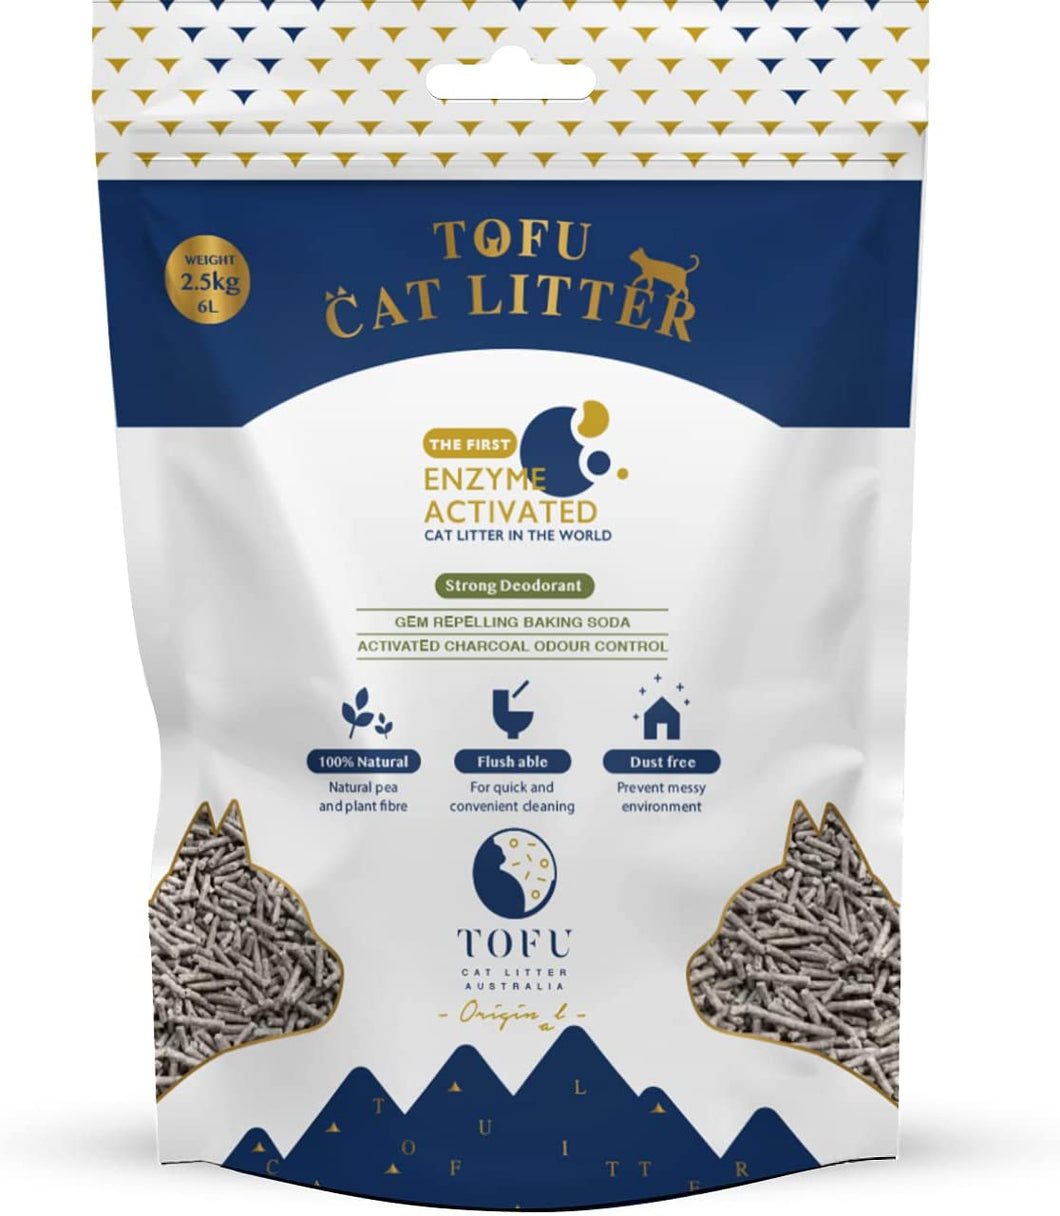 Tofu Cat Litter Australia | Flushable Litter | Dust Free | Strong Deodoriser | 6L 2.5KG